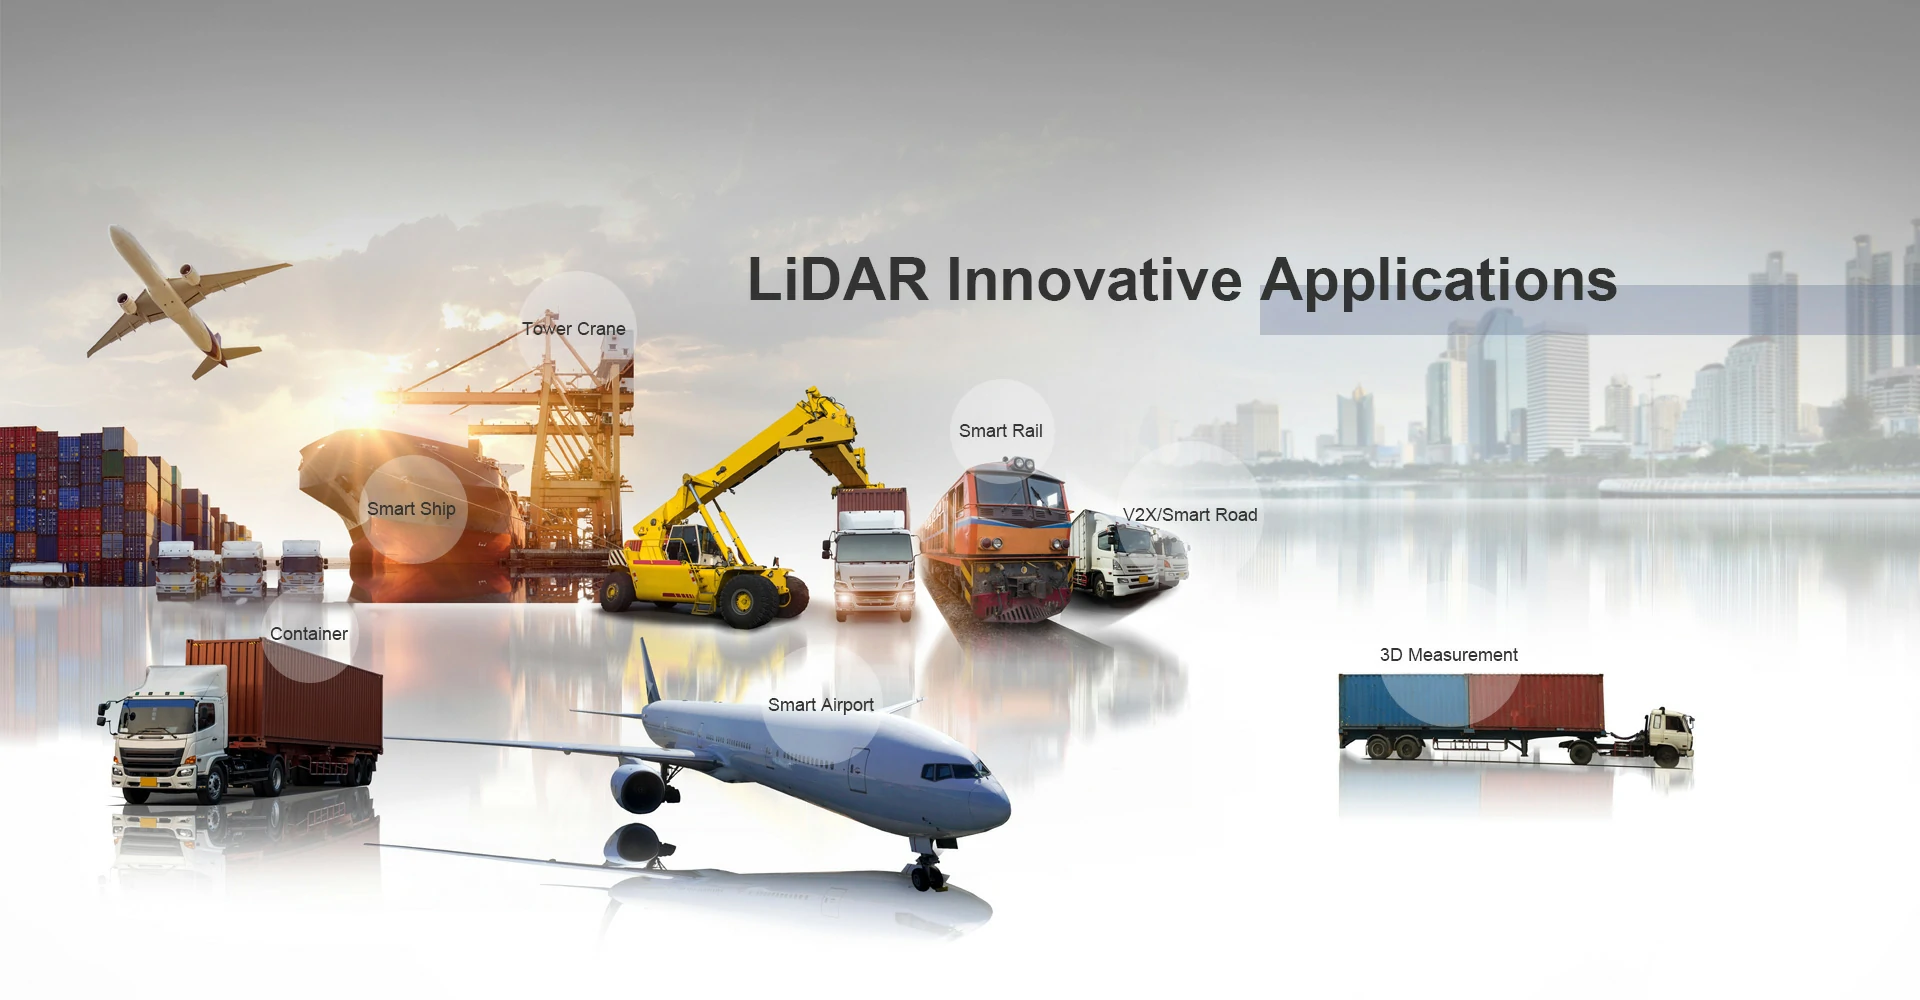 Applications of Low-cost LiDAR